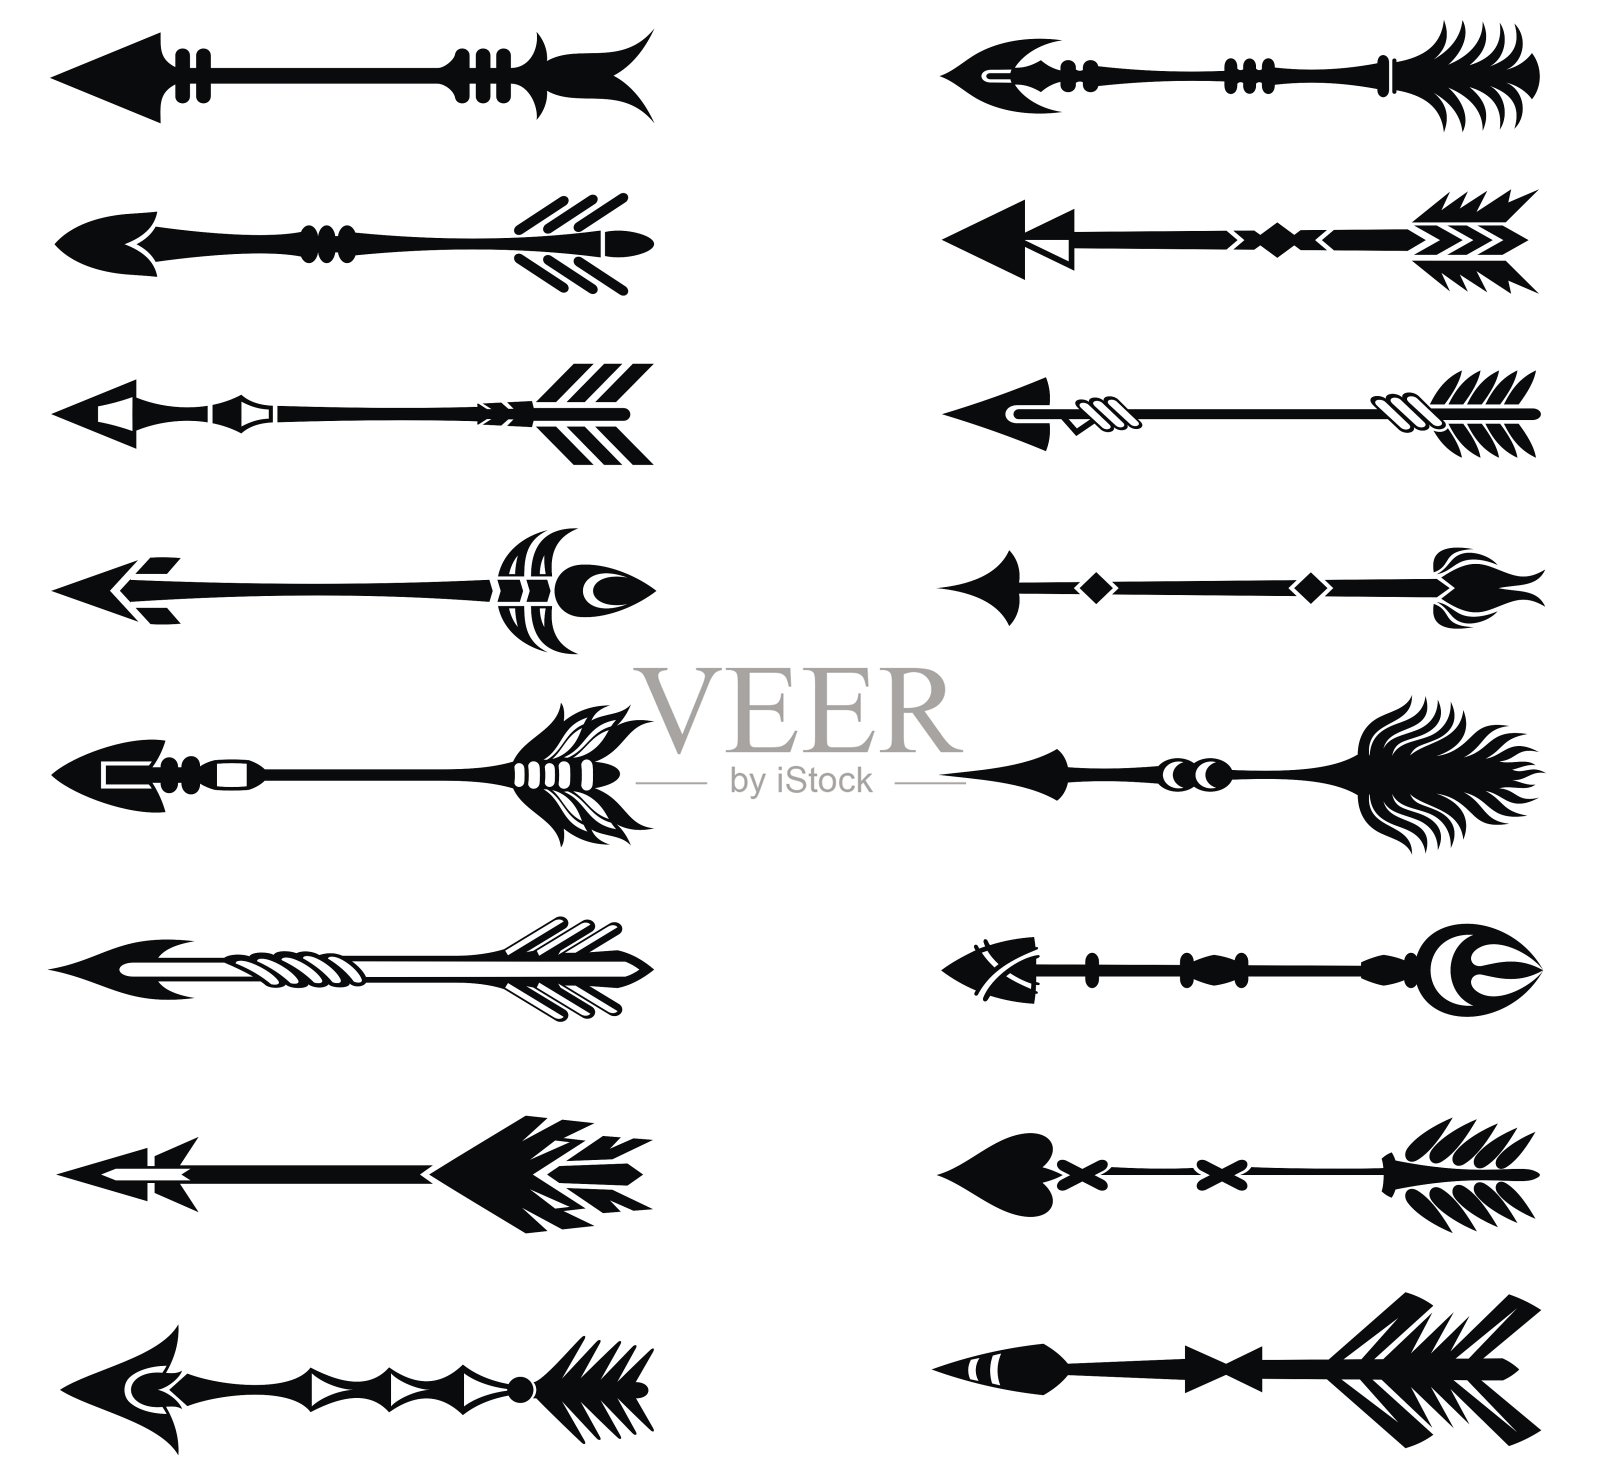 箭设置在美洲印第安人的风格。插画图片素材